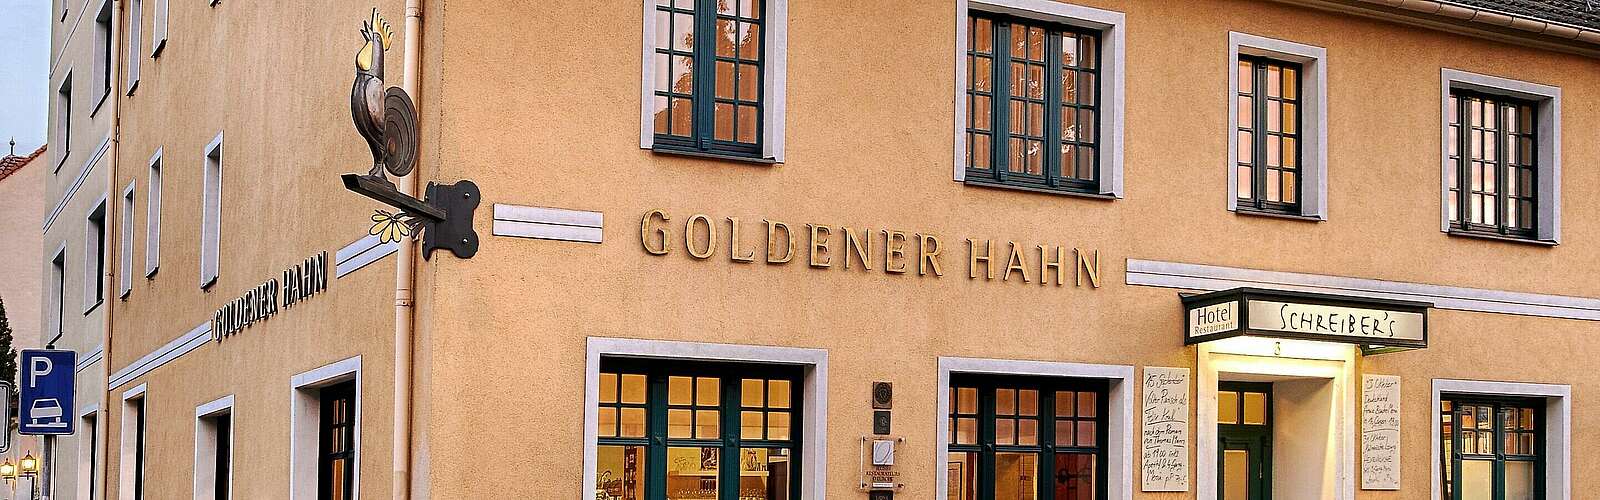 Restaurant und Hotel &amp;quot;Goldener Hahn&amp;quot;,
        
    

        Foto: Schreibers Goldener Hahn/Kein Urheber bekannt